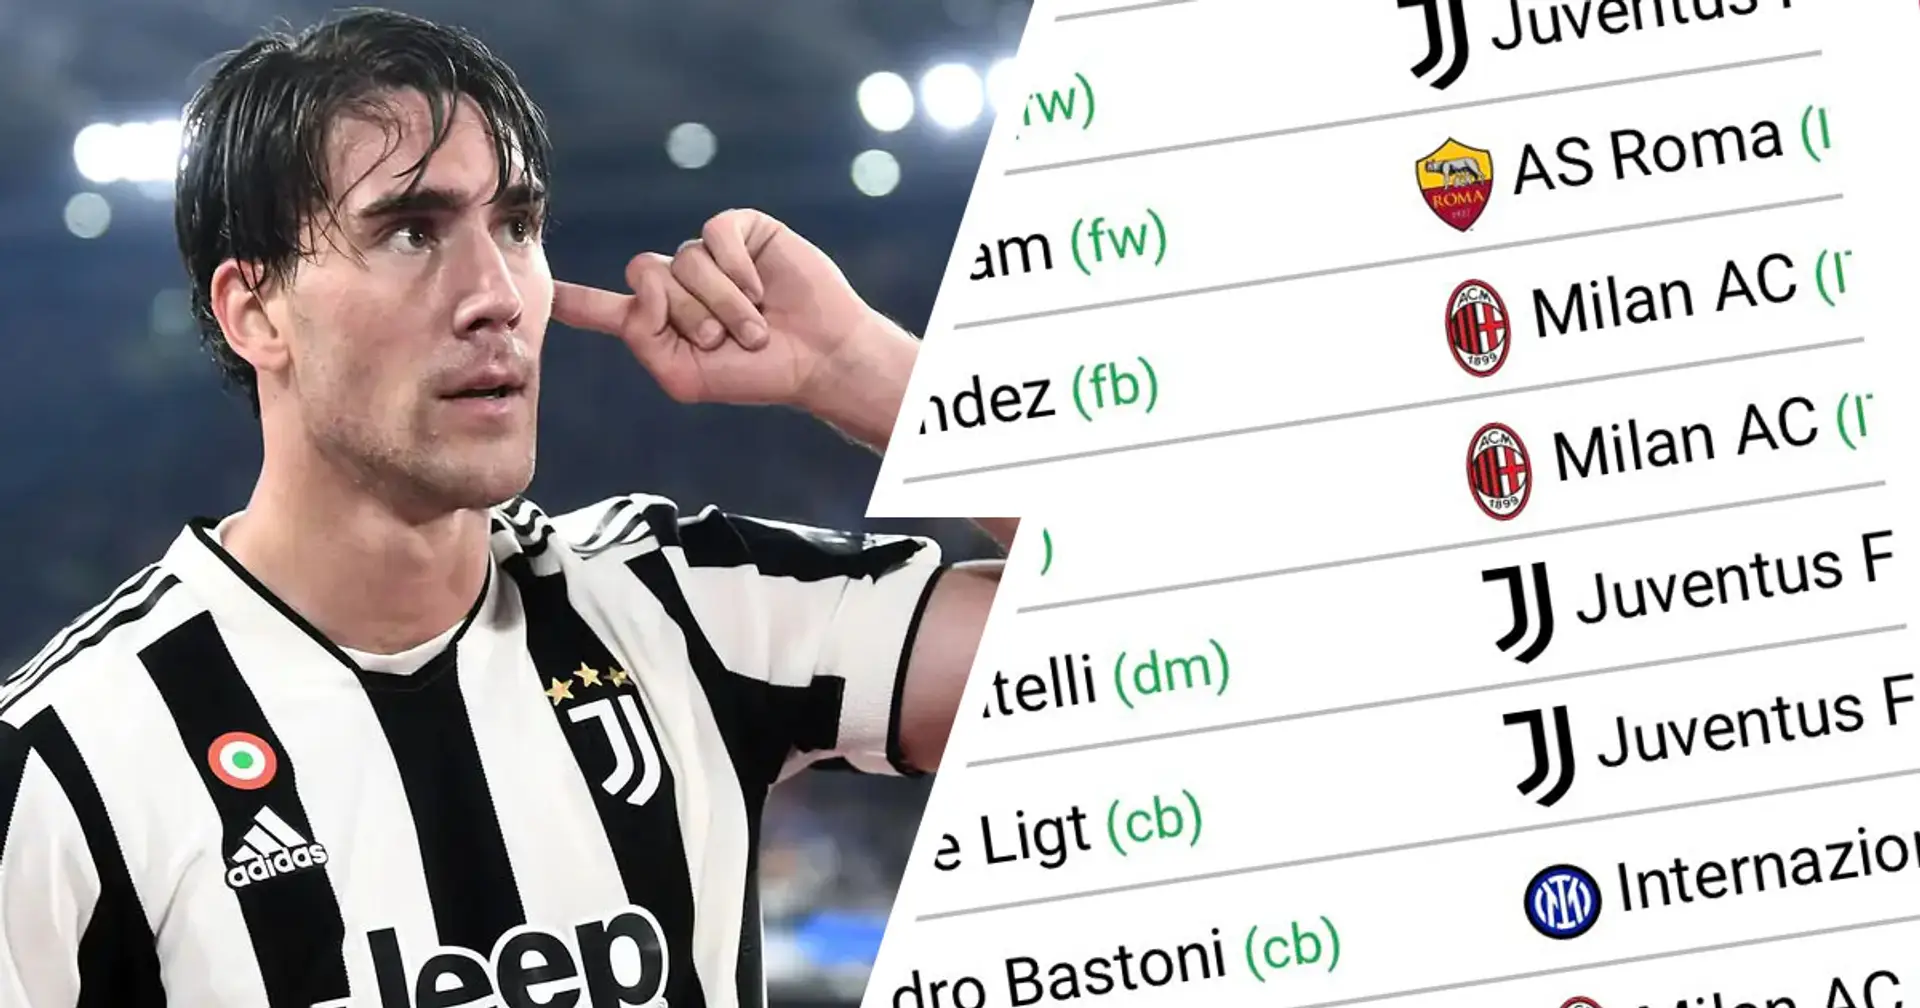 Il CIES rivela i giocatori con il valore più alto in Serie A: 3 calciatori della Juventus in Top 10